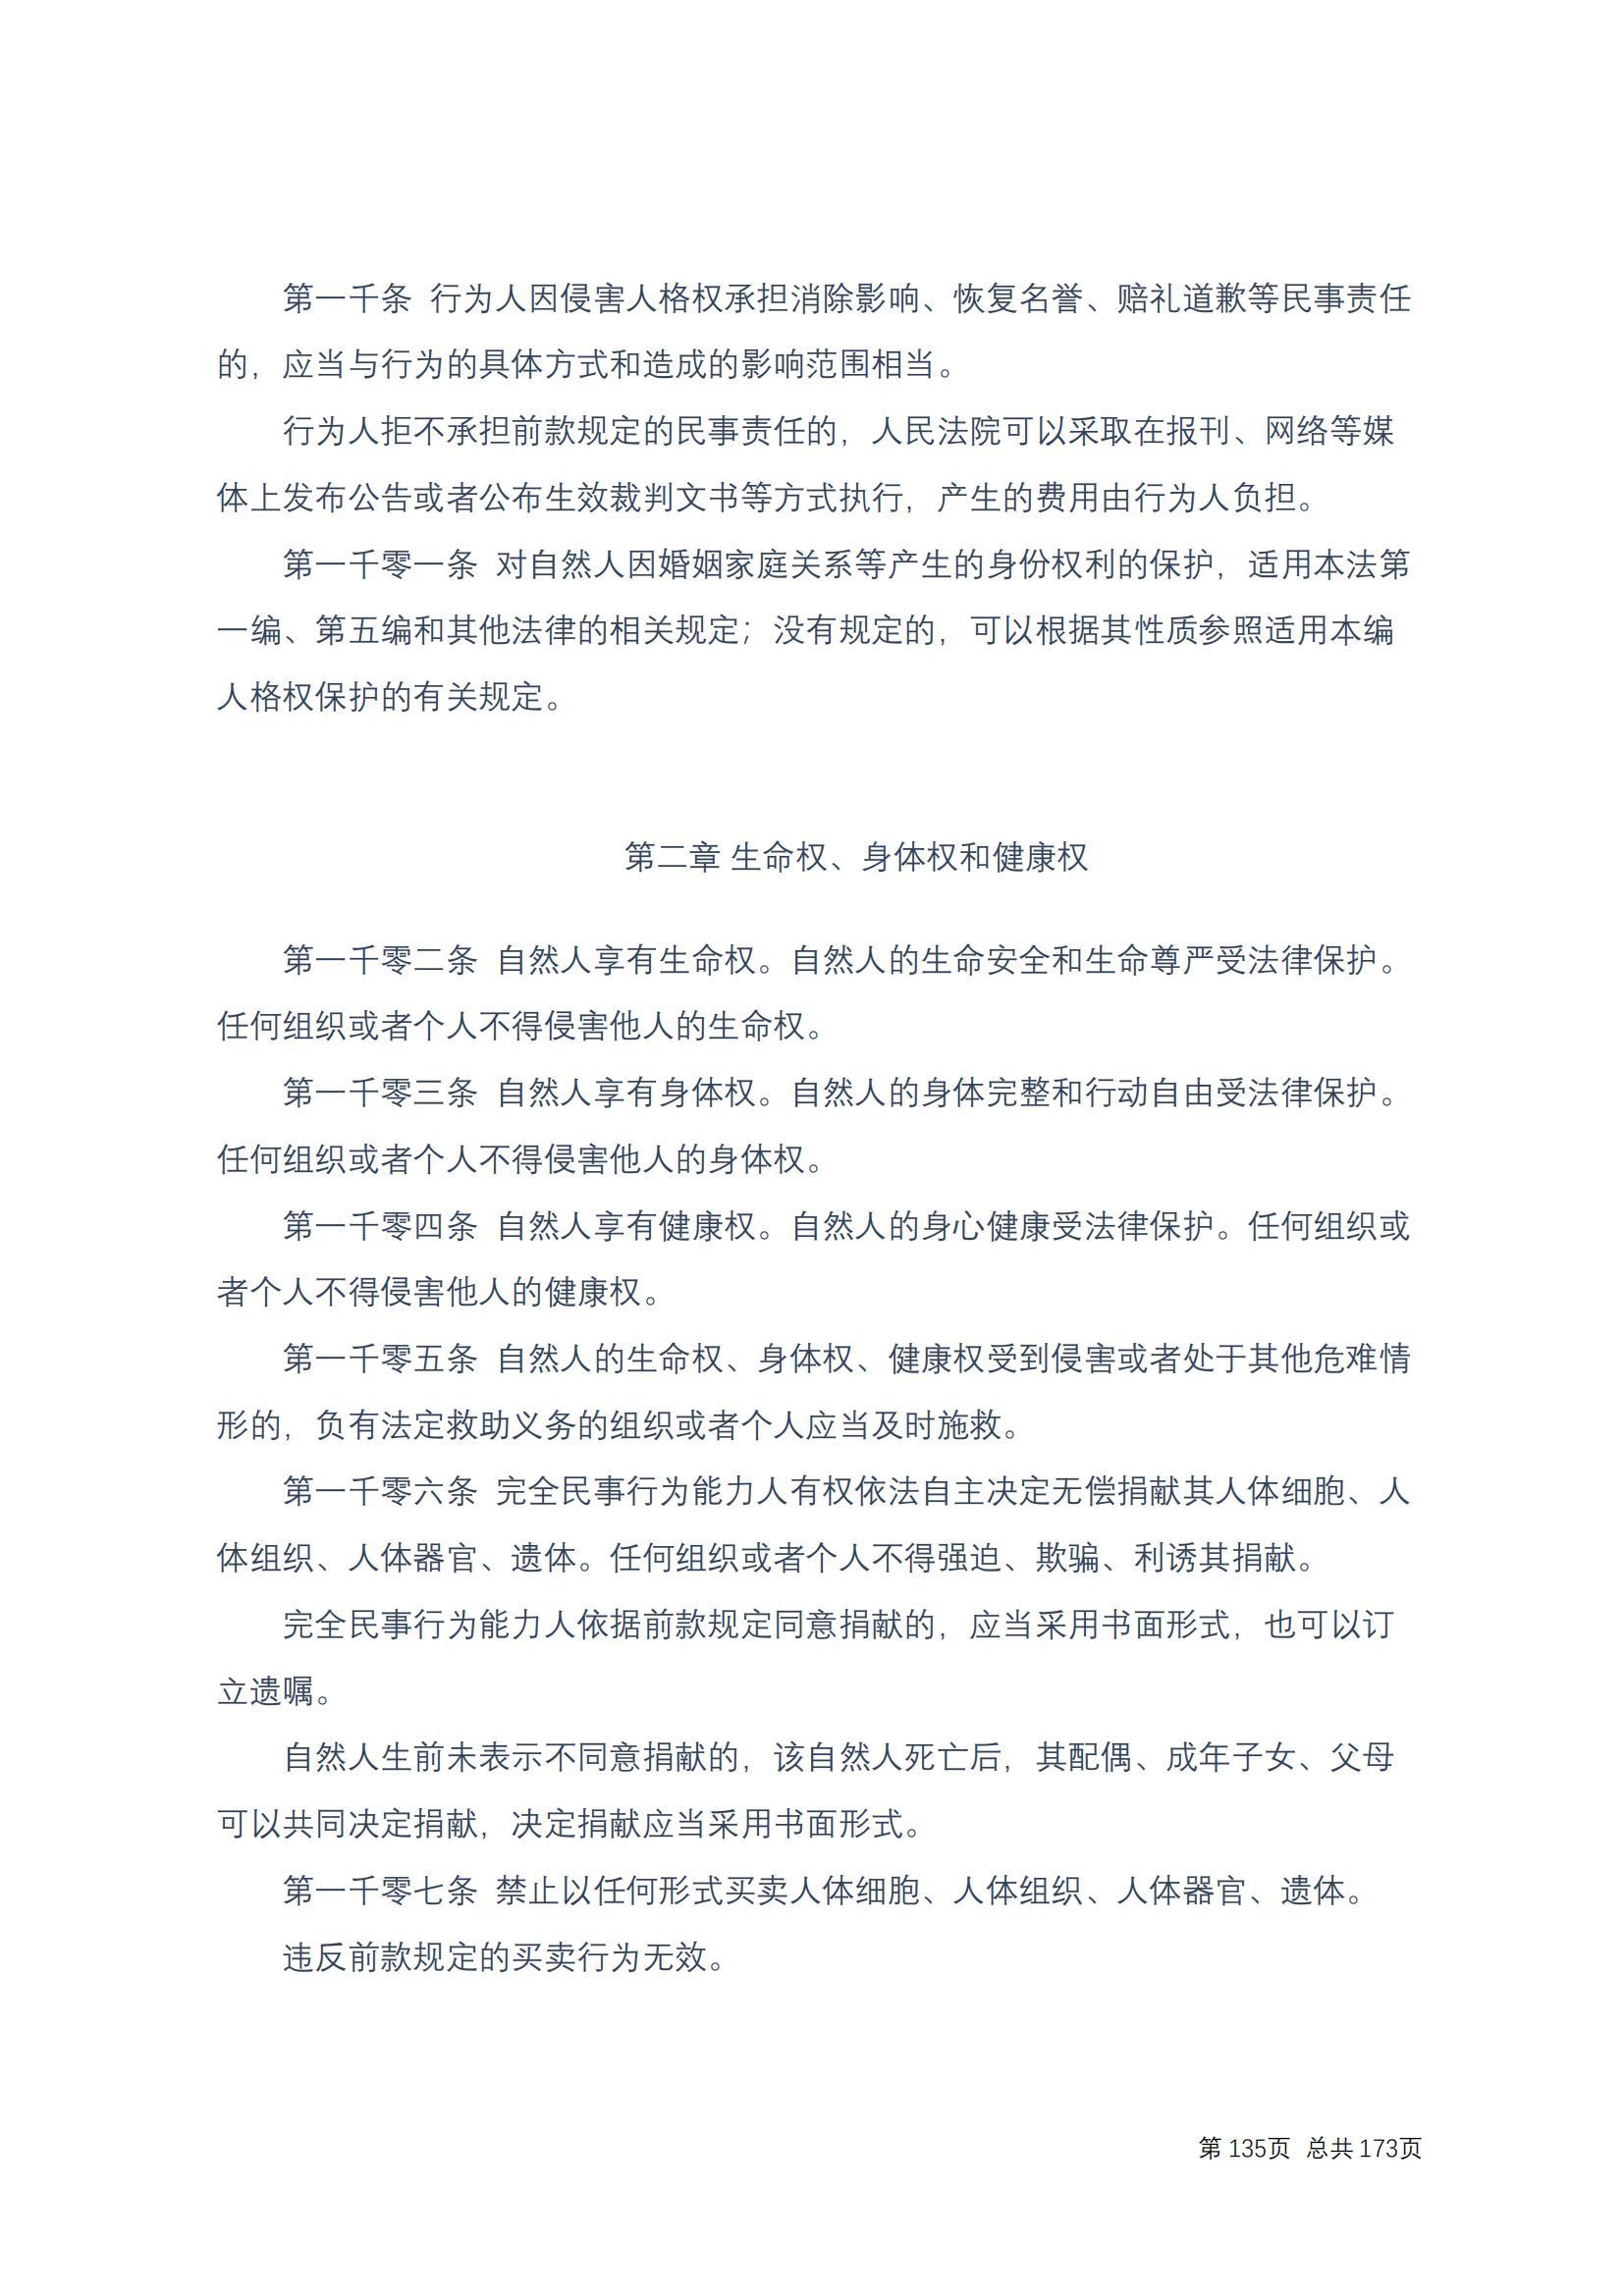 中华人民共和国民法典 修改过_134